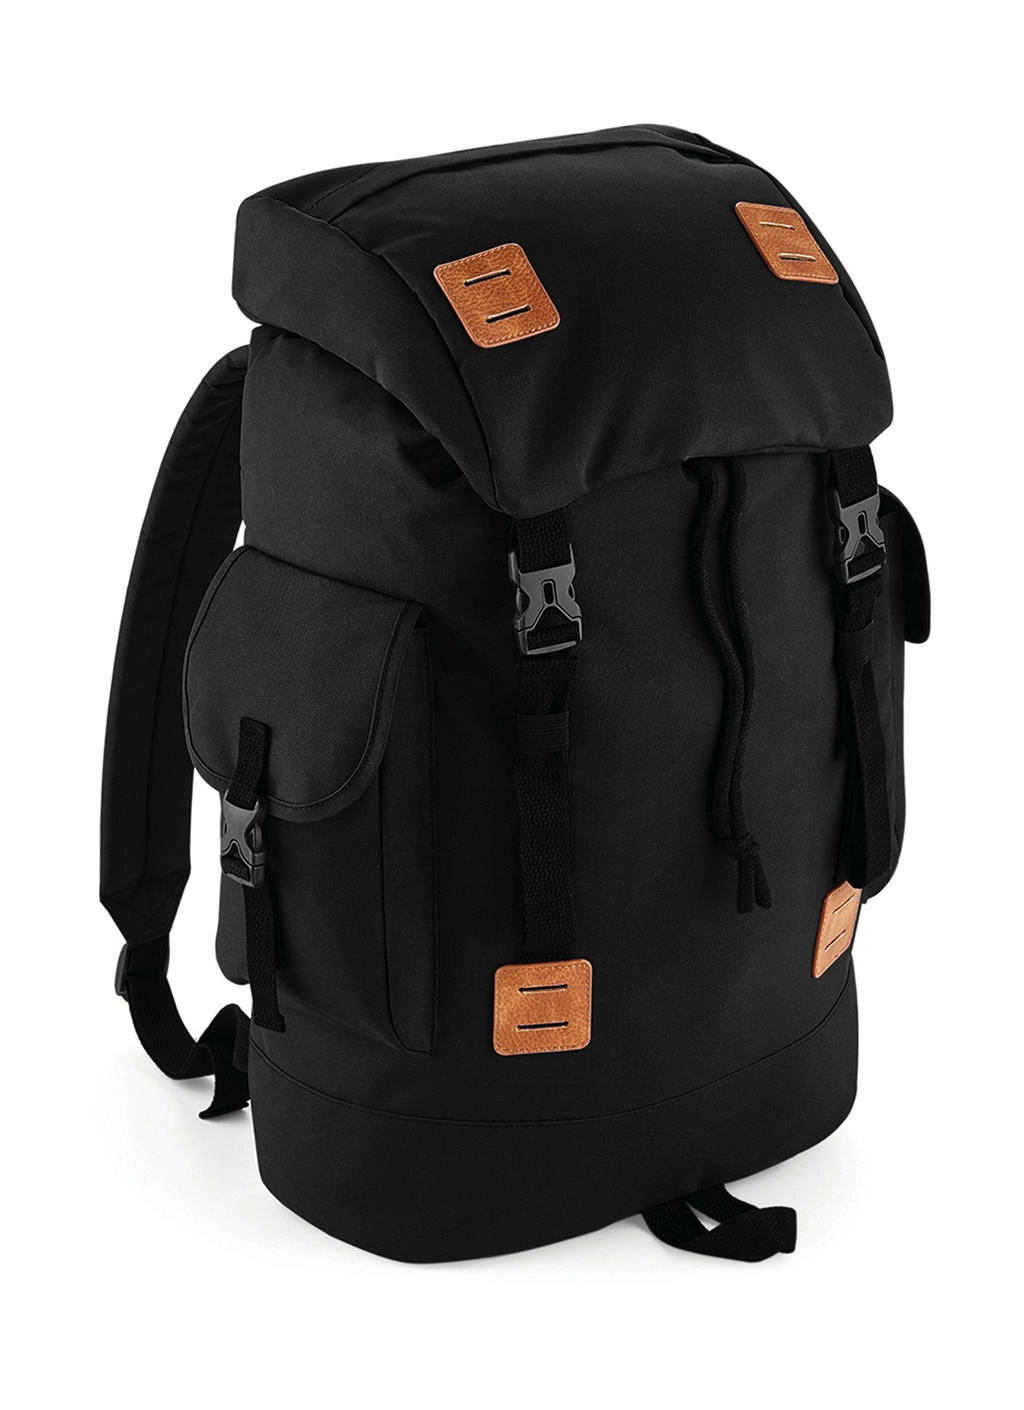 Urban Explorer Backpack zum Besticken und Bedrucken in der Farbe Black/Tan mit Ihren Logo, Schriftzug oder Motiv.